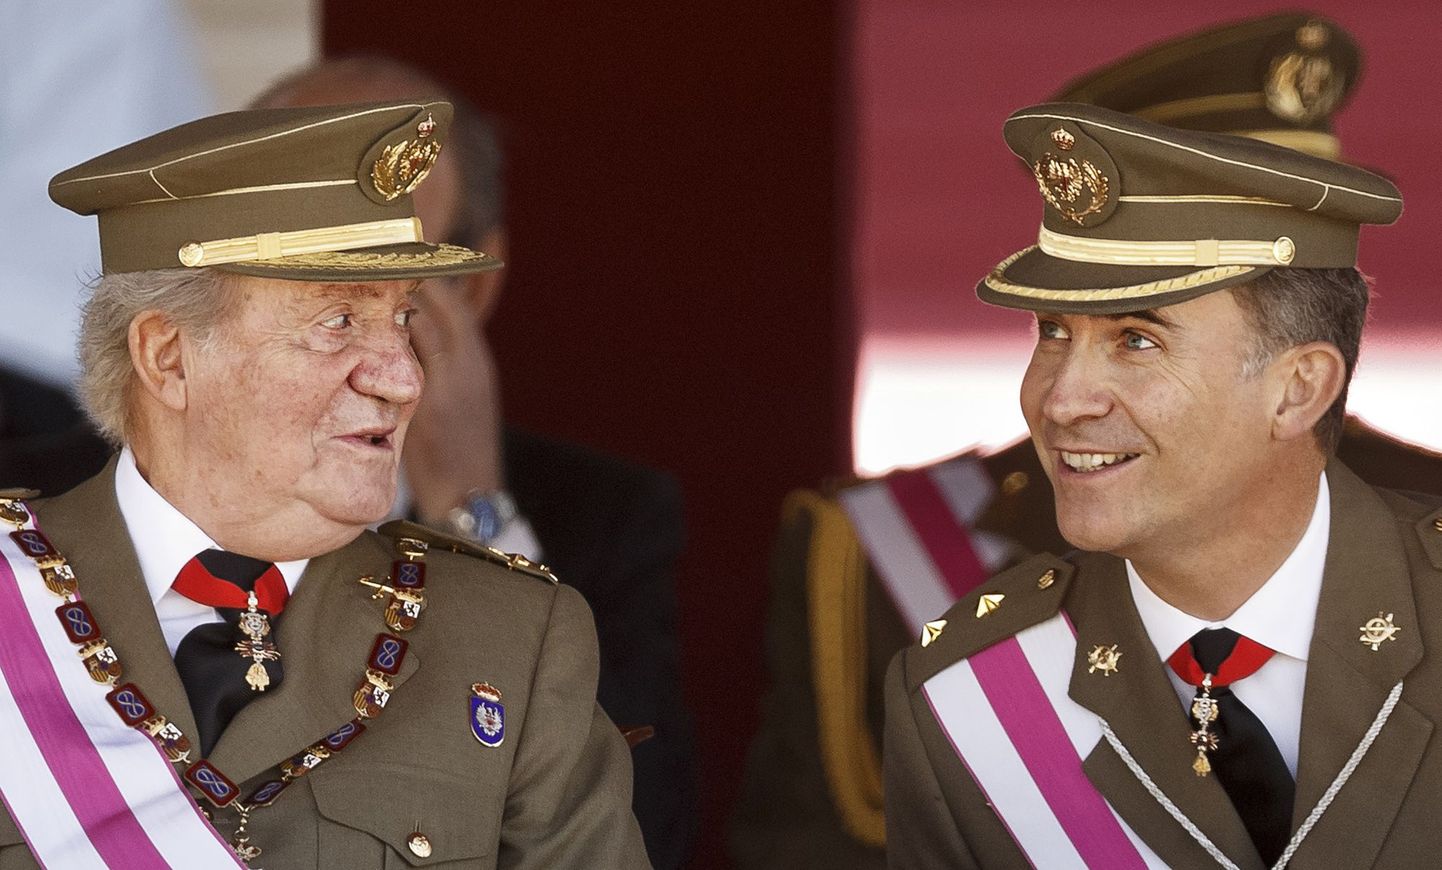 Испанский король Хуан Карлос и принц Филипе. Чтобы в Испании могла произойти смена королевской власти, парламенту требуется в срочном порядке разработать церемонию ее передачи. Хотя в последнее время уход монархов «на пенсию» перестал быть чем-то экстраординарным.